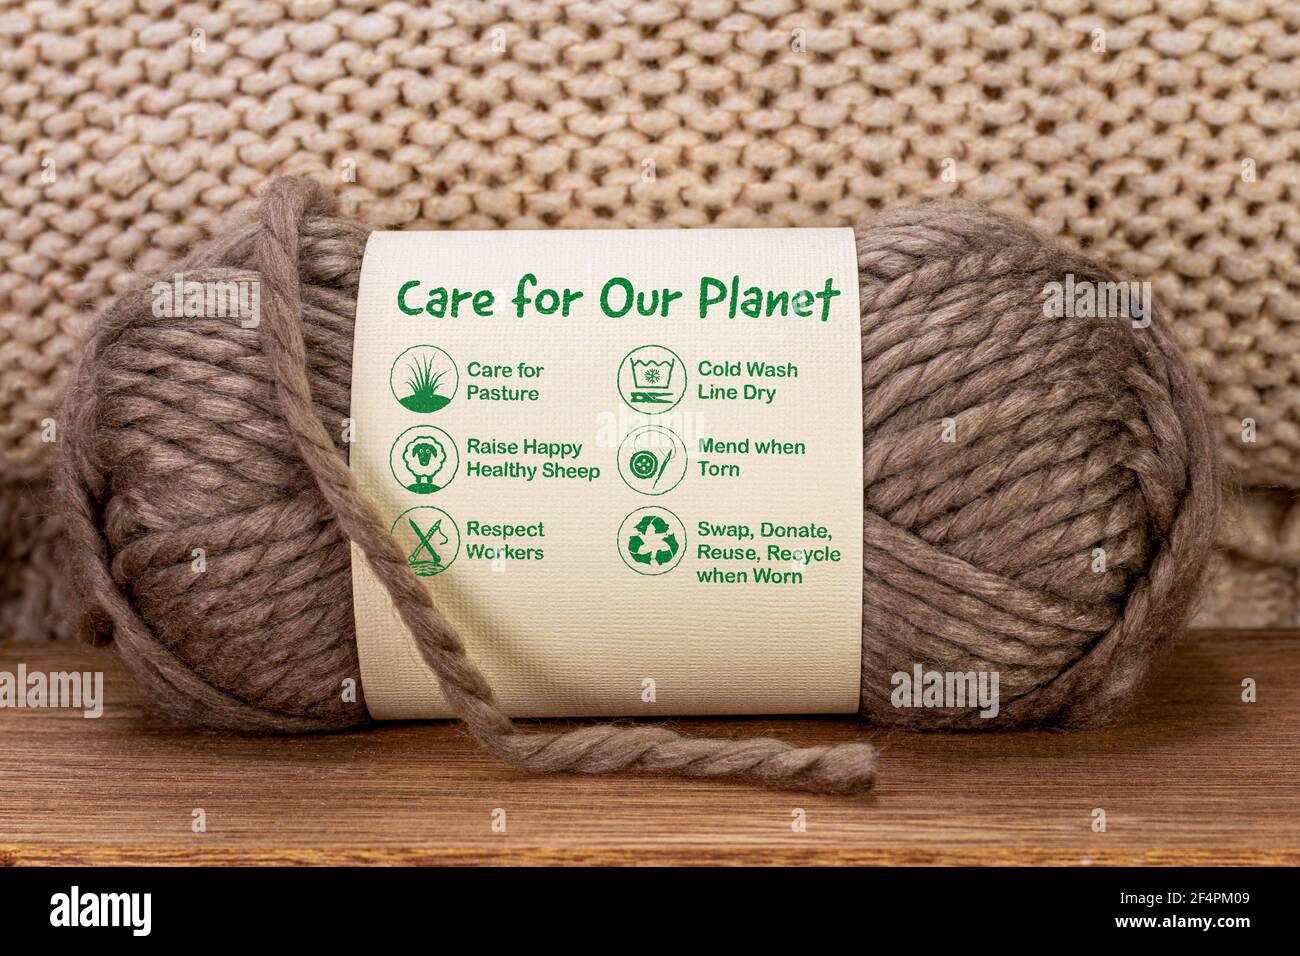 Cuidado de nuestro planeta etiqueta sobre la pelota de lana con iconos de cuidado y texto, la moda sostenible y el consumismo ético Foto de stock